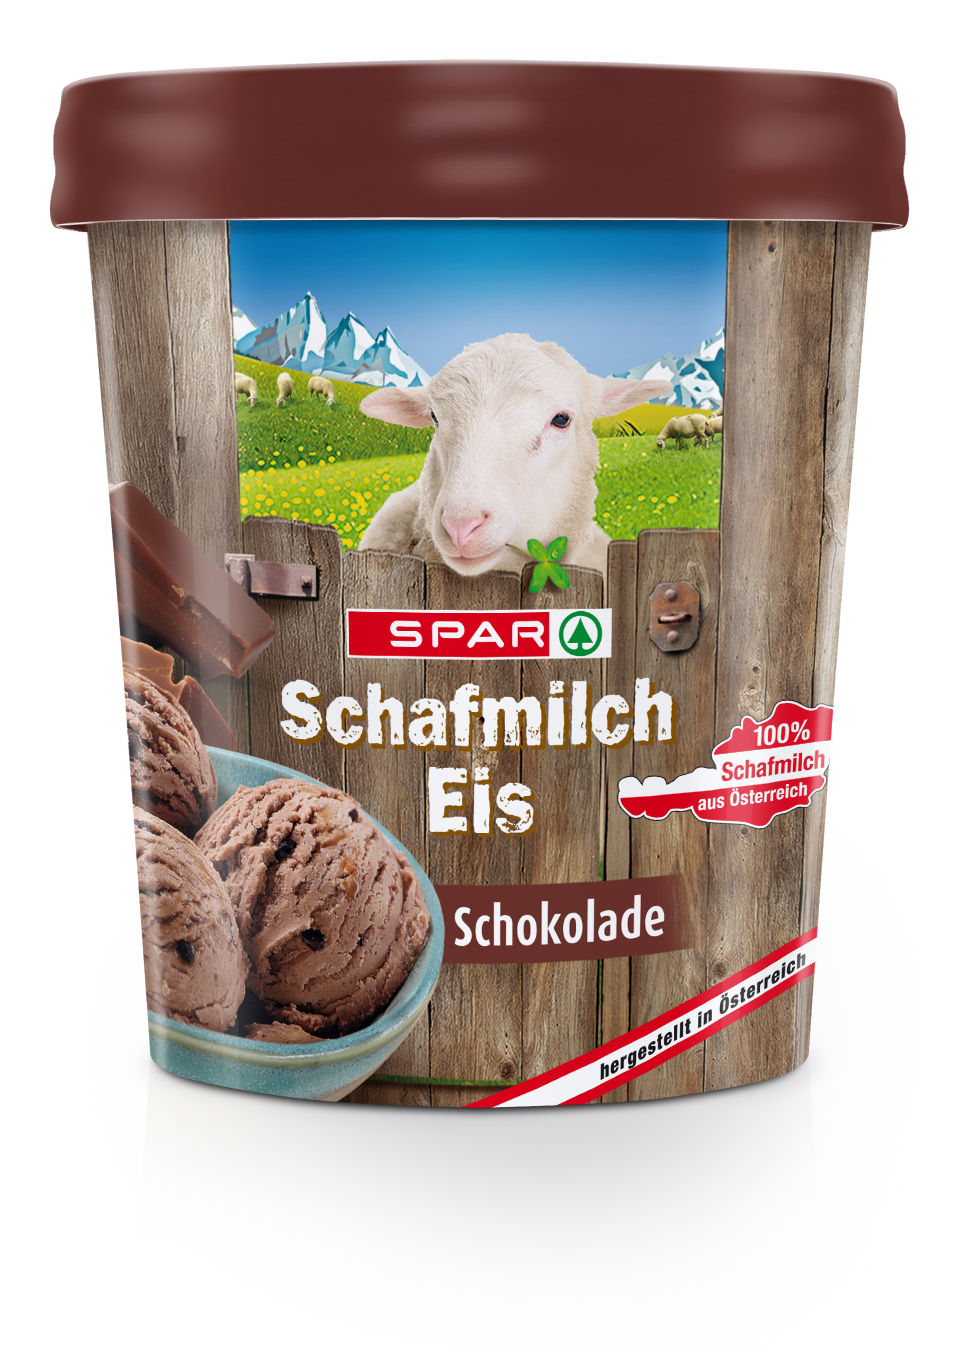 Schafmilch-Eis-3Ds-SPAR_Schafmilcheis_Schokolade_2018